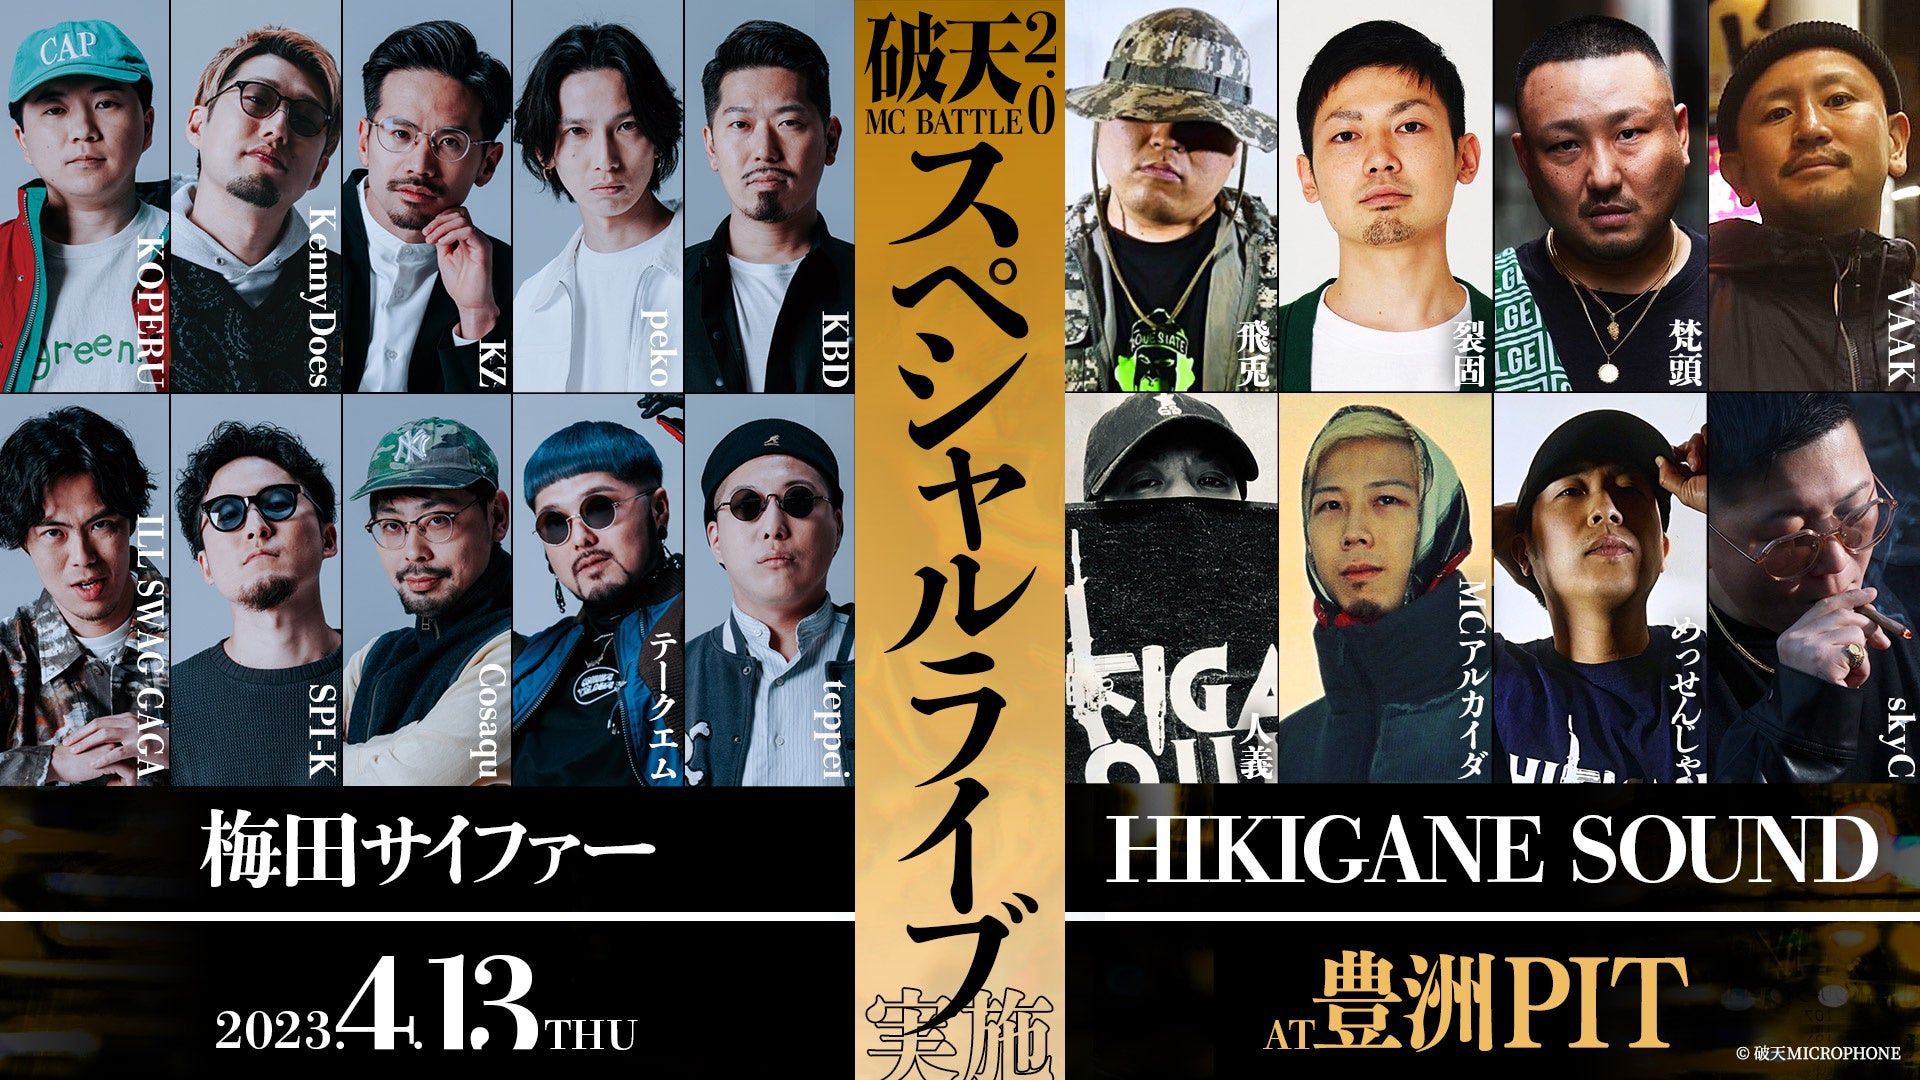 『破天MCBATTLE 2.0』梅田サイファー、HIKIGANE SOUNDの2大クルーによるスペシャルライブ＆3on3 BATTLE実施決定！